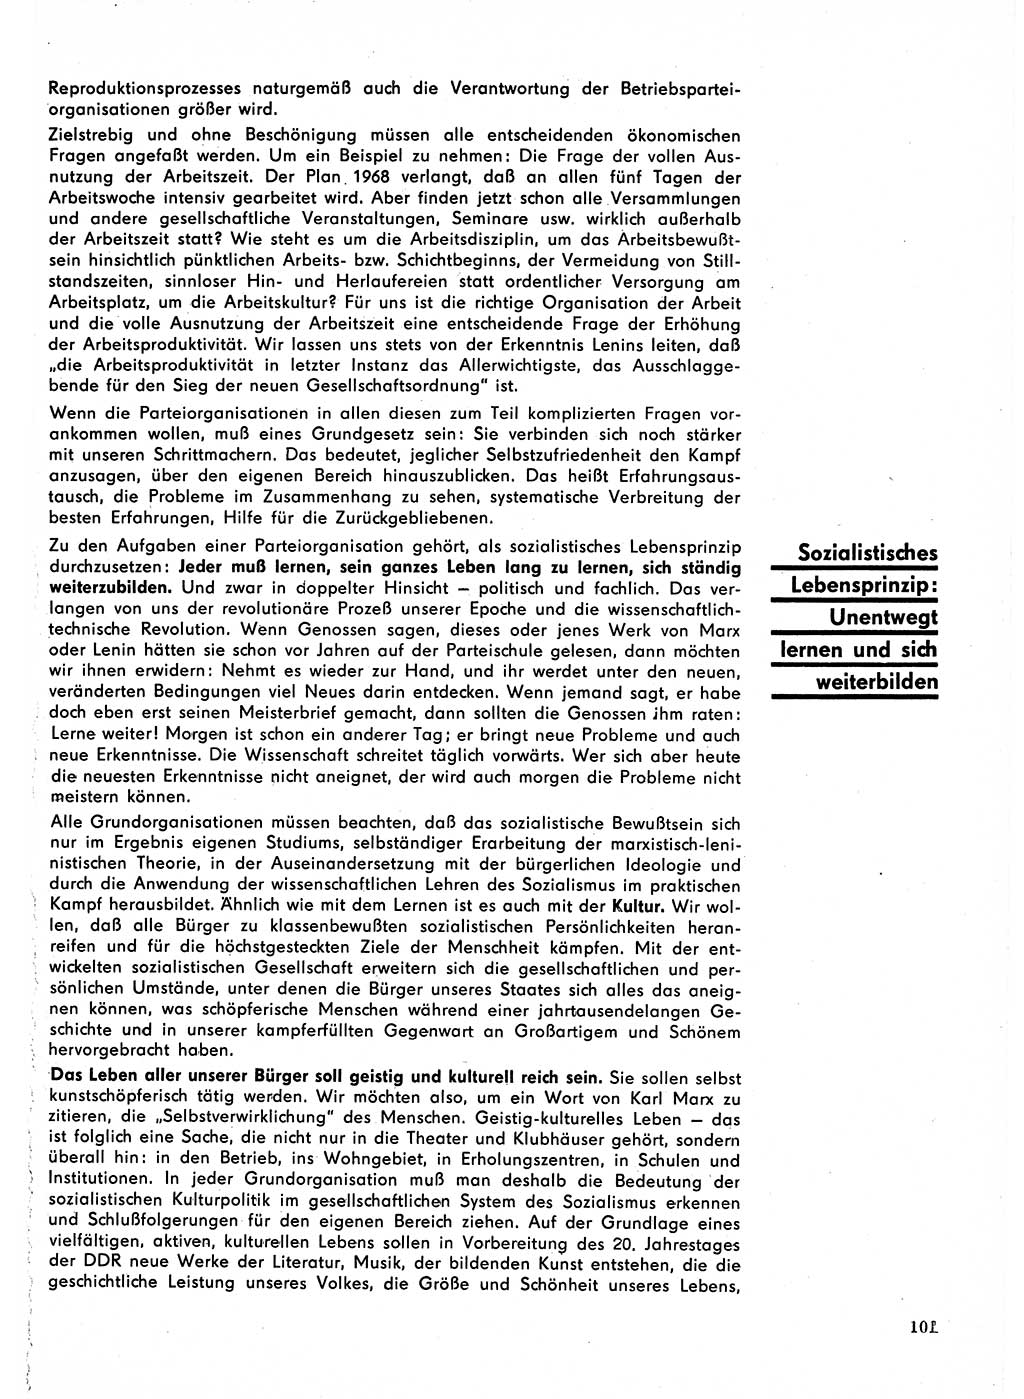 Neuer Weg (NW), Organ des Zentralkomitees (ZK) der SED (Sozialistische Einheitspartei Deutschlands) für Fragen des Parteilebens, 23. Jahrgang [Deutsche Demokratische Republik (DDR)] 1968, Seite 101 (NW ZK SED DDR 1968, S. 101)